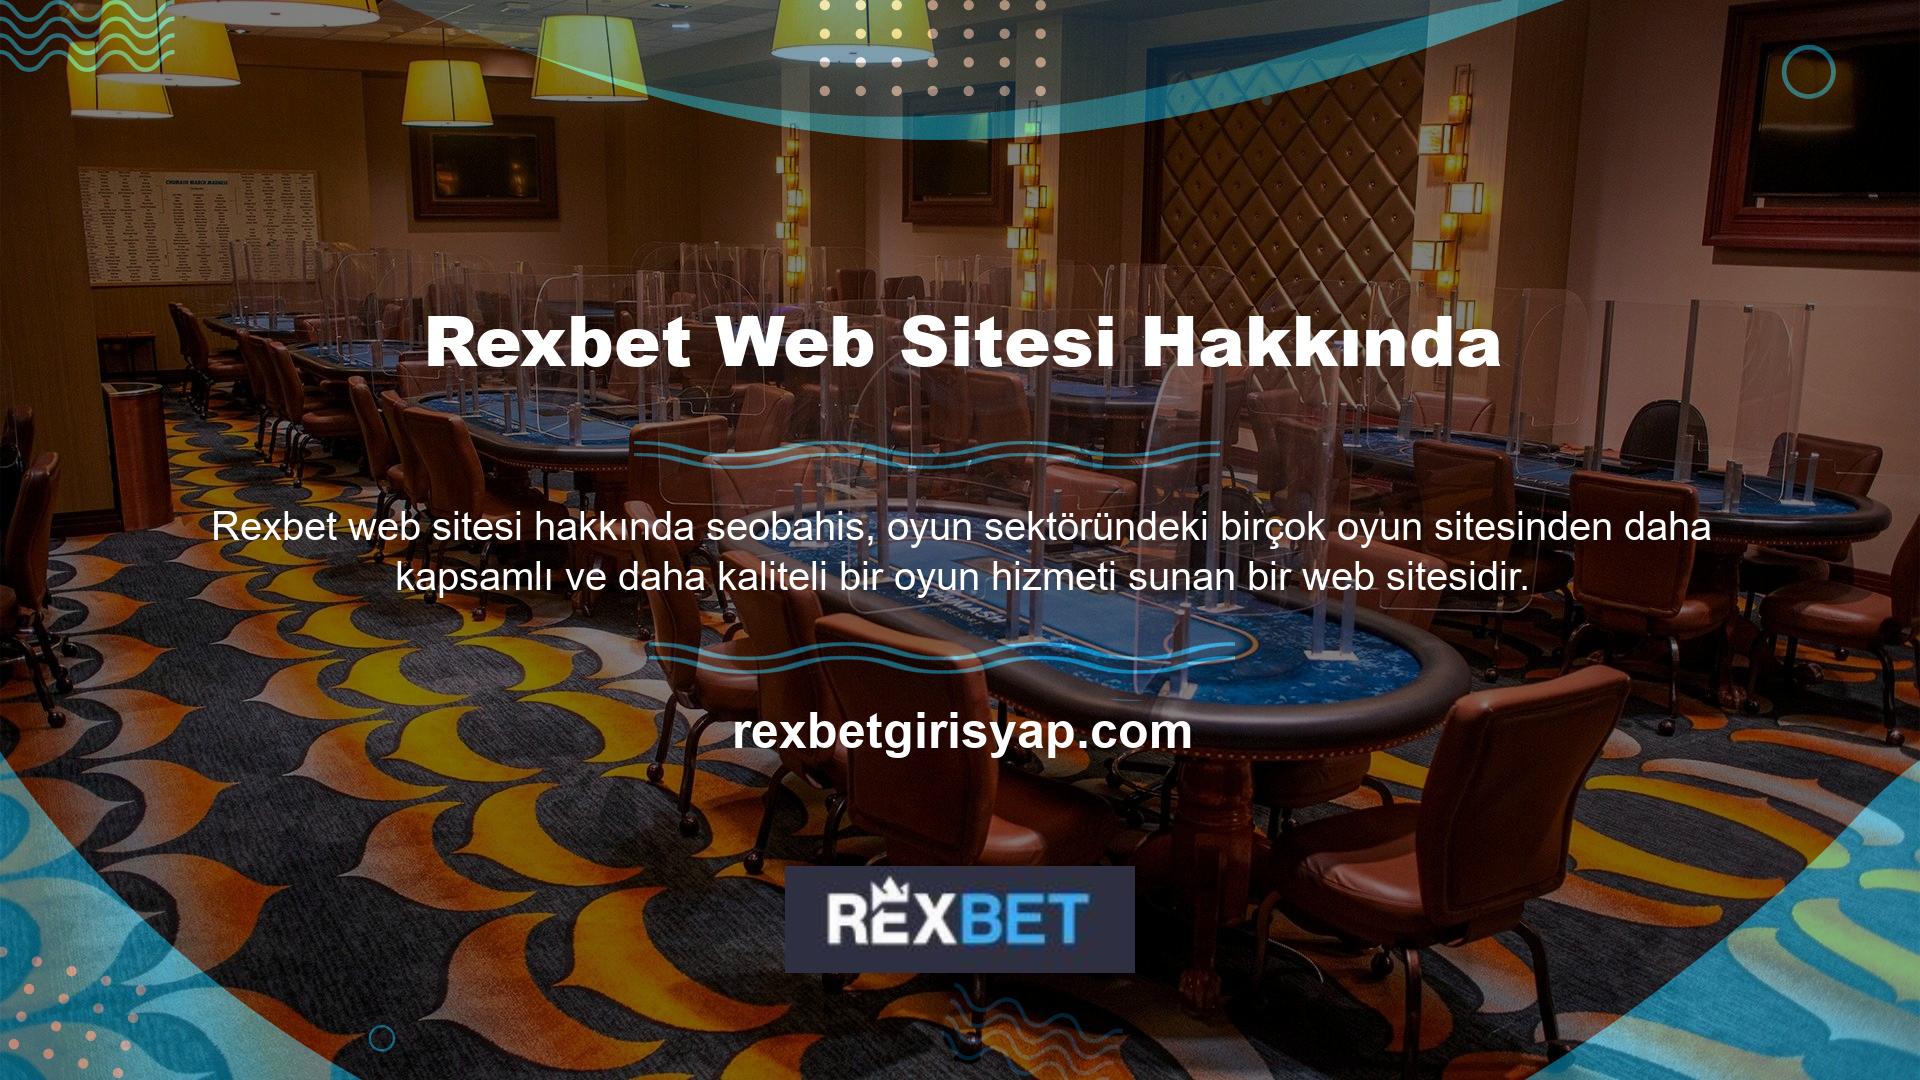 Eski adresinizden yeni adresinize taşındıktan sonra da Rexbet online oyun platformunun keyfini çıkarmaya devam edebilirsiniz